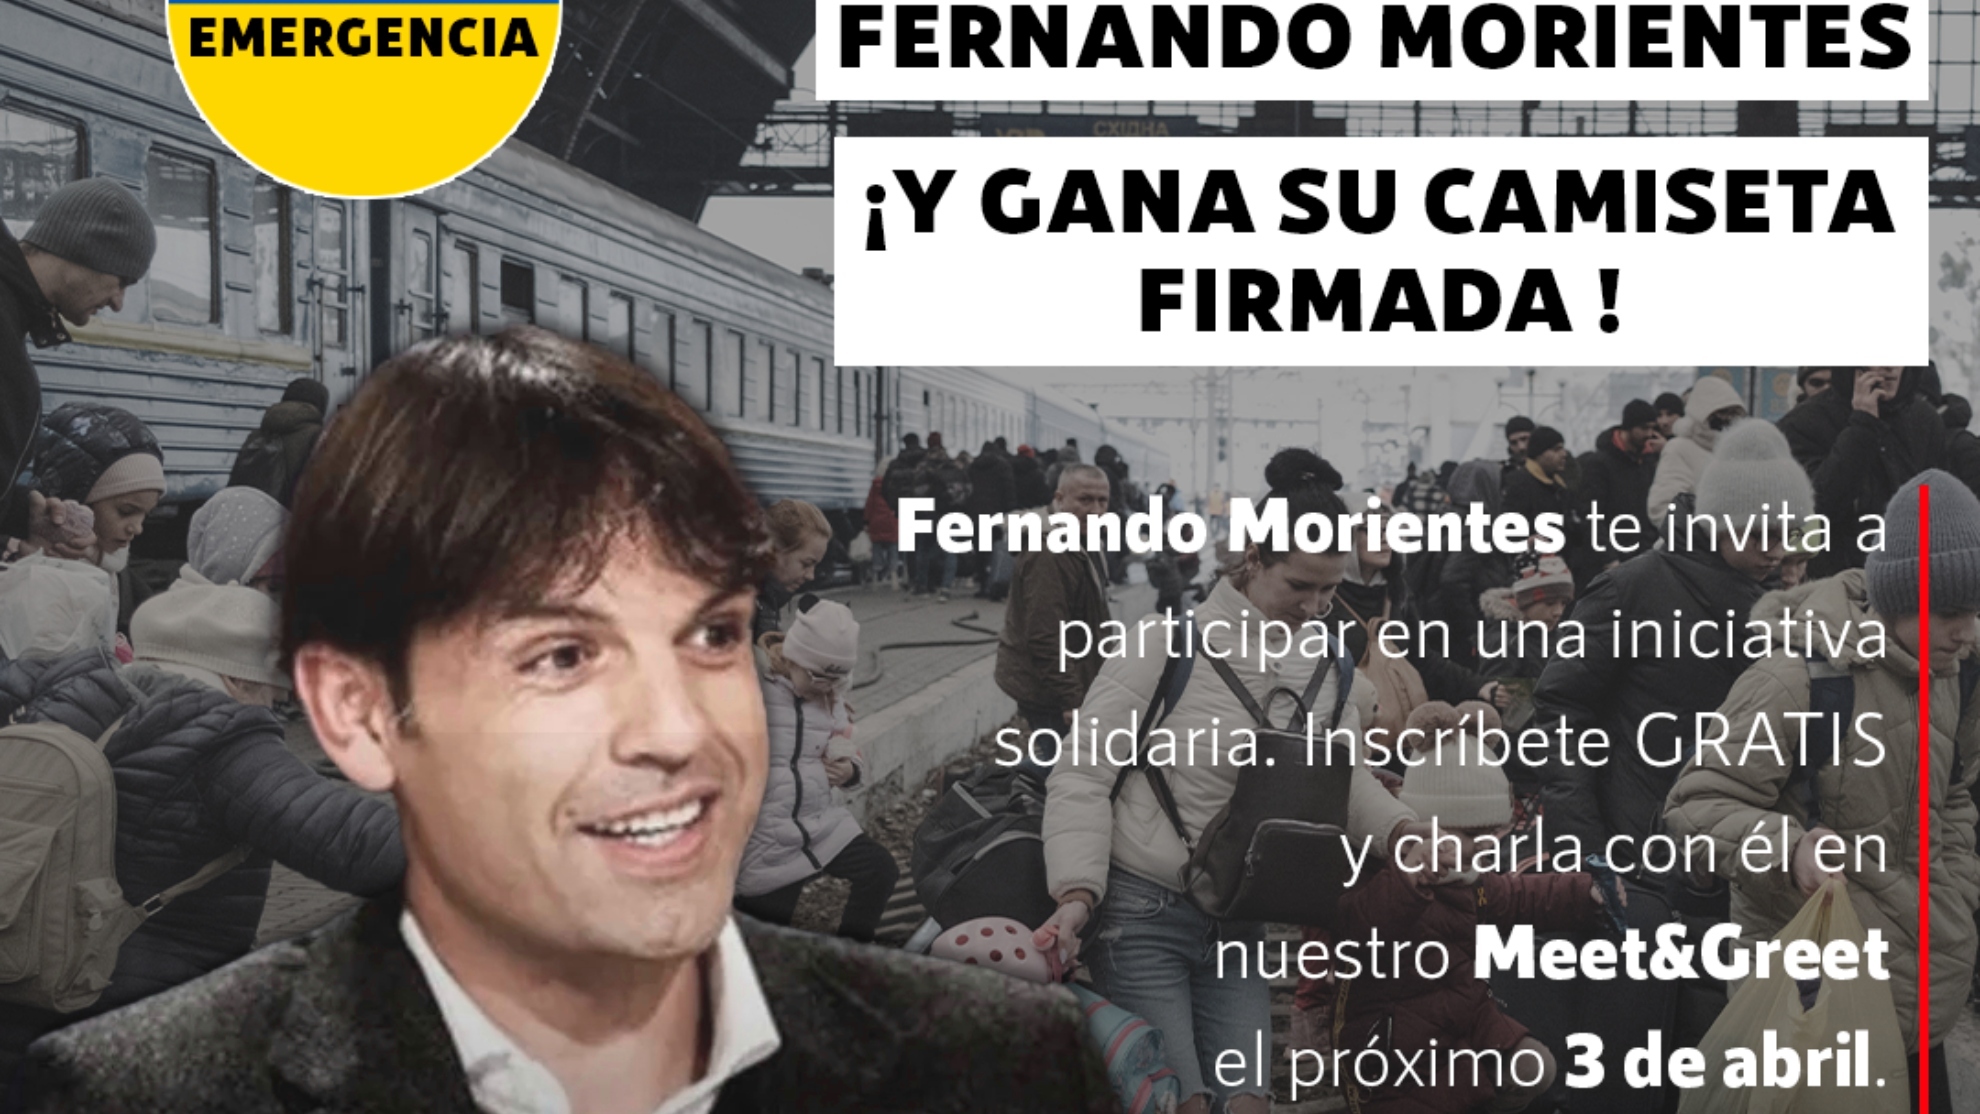 Conoce a Fernando Morientes en una sala virtual interactiva, colabora con una causa solidaria... ¡Y llévate una camiseta firmada!